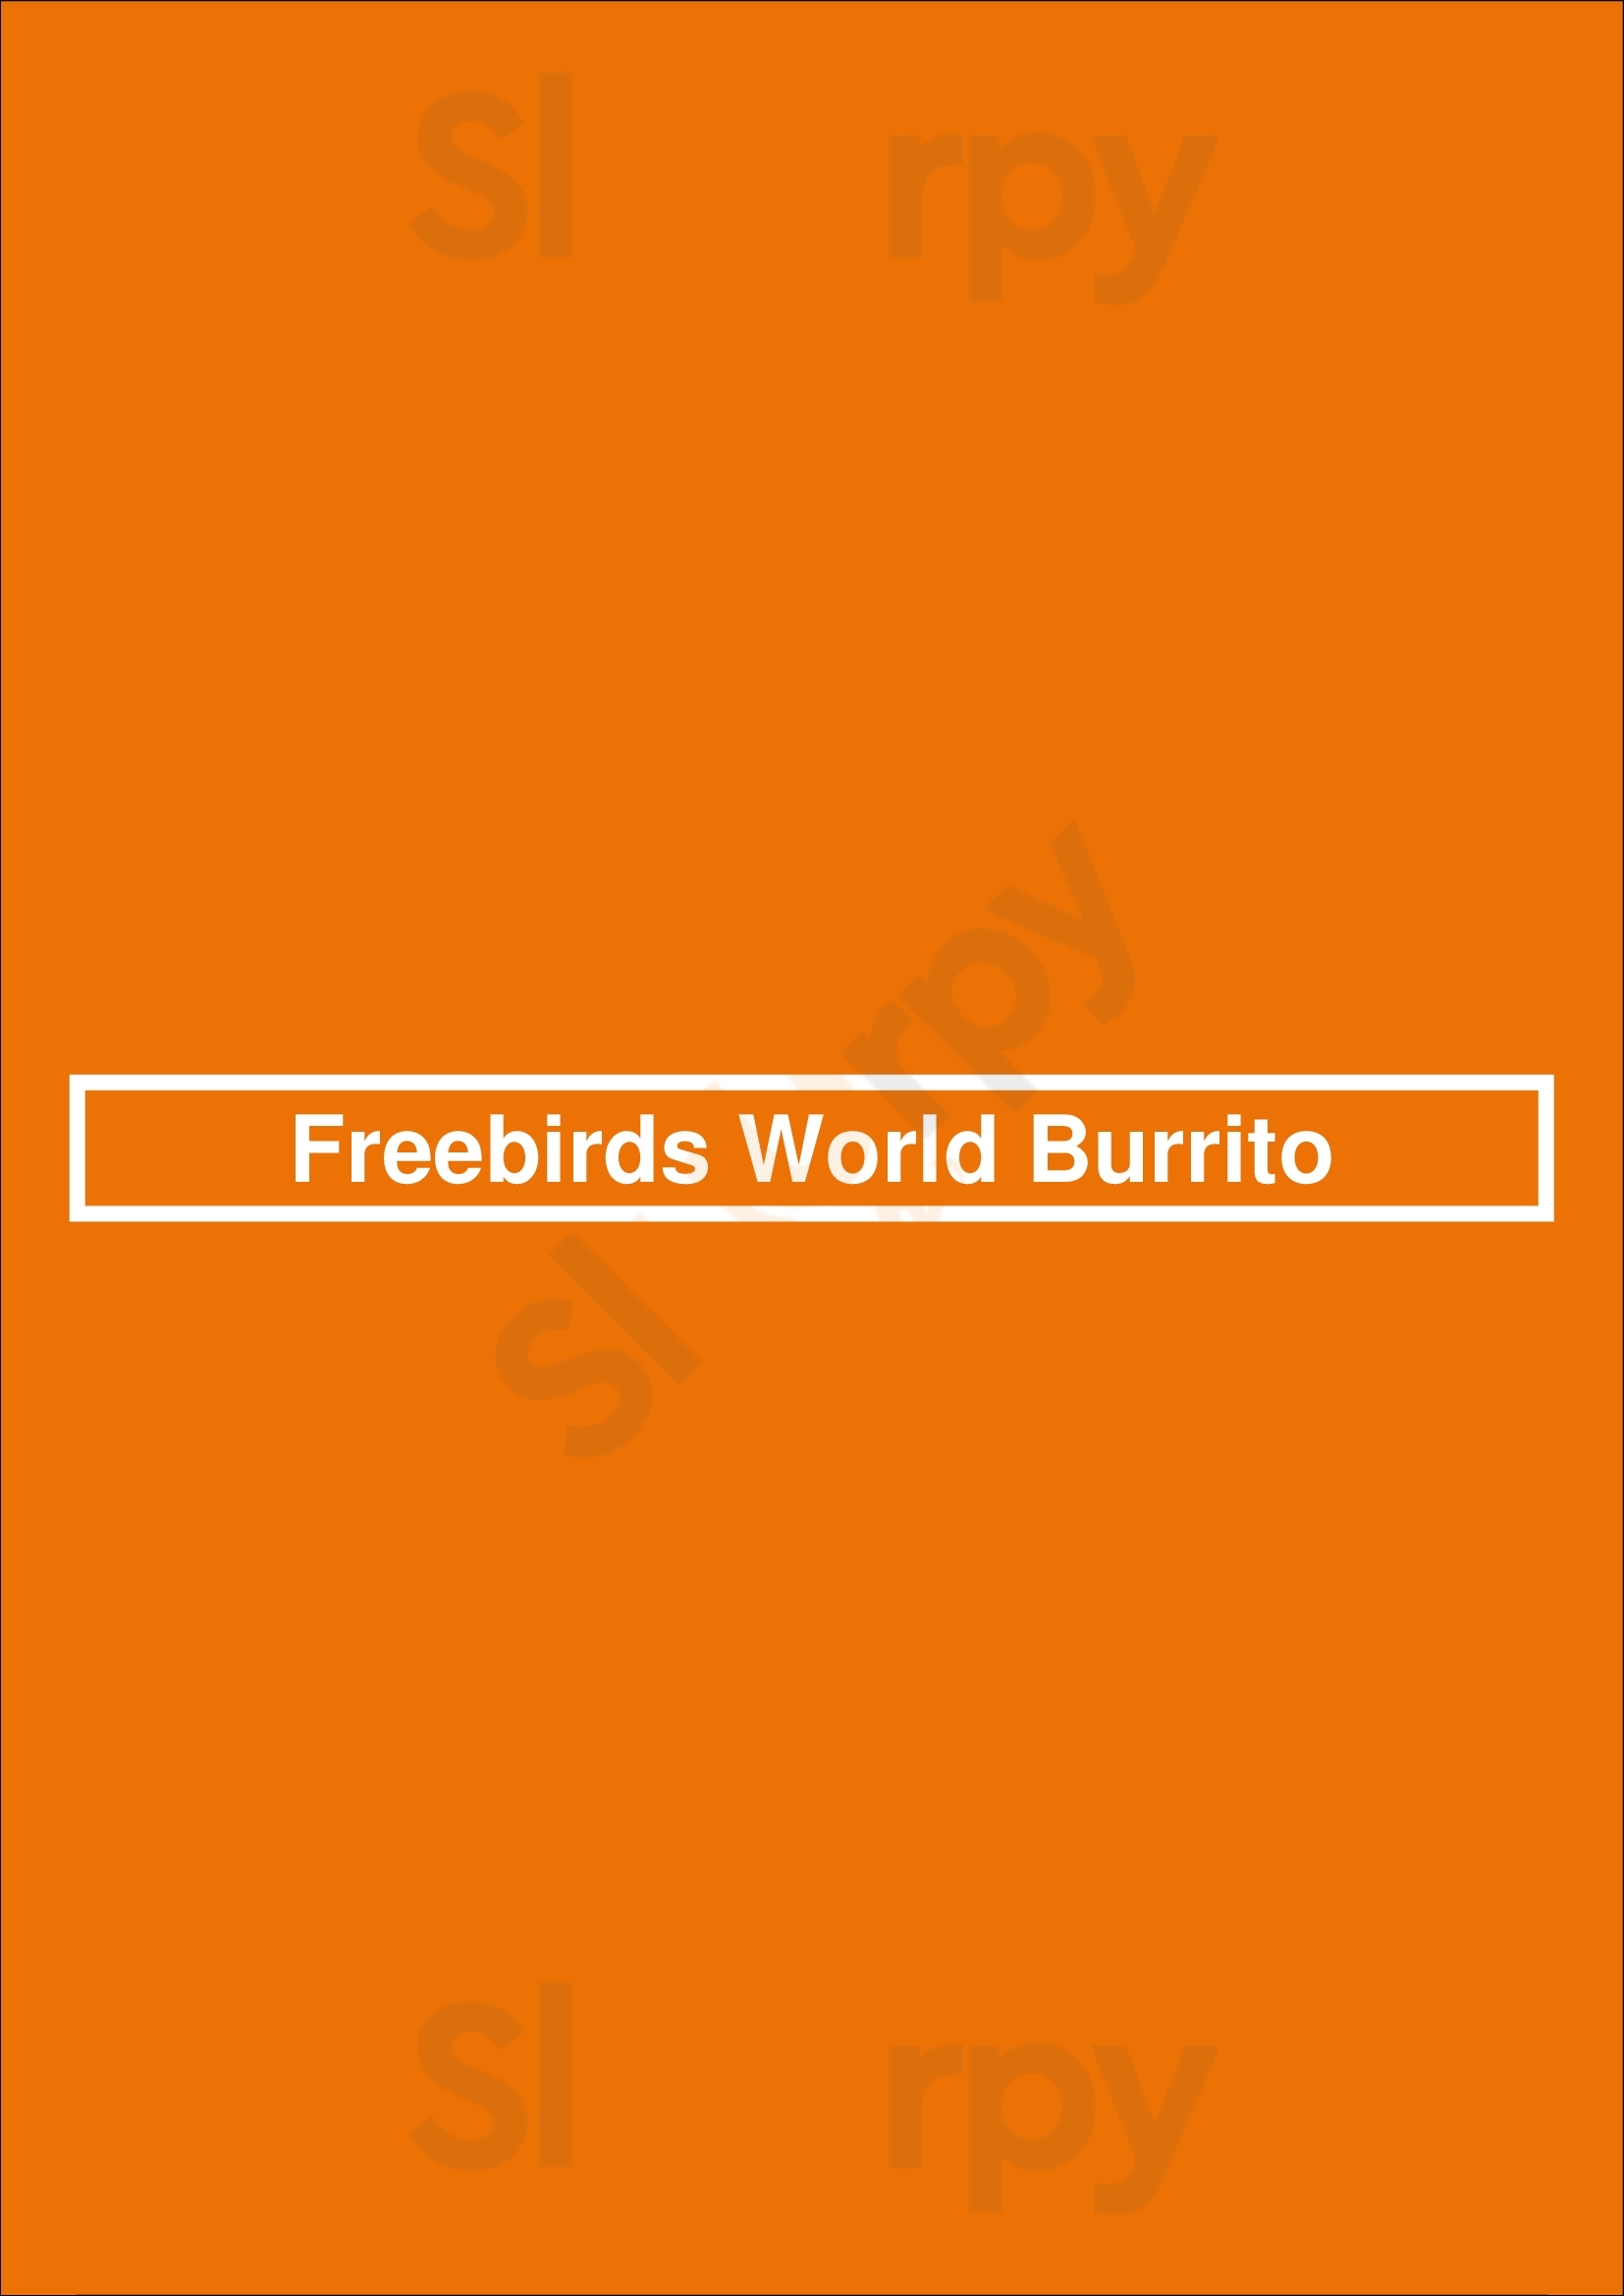 Freebirds World Burrito San Antonio Menu - 1